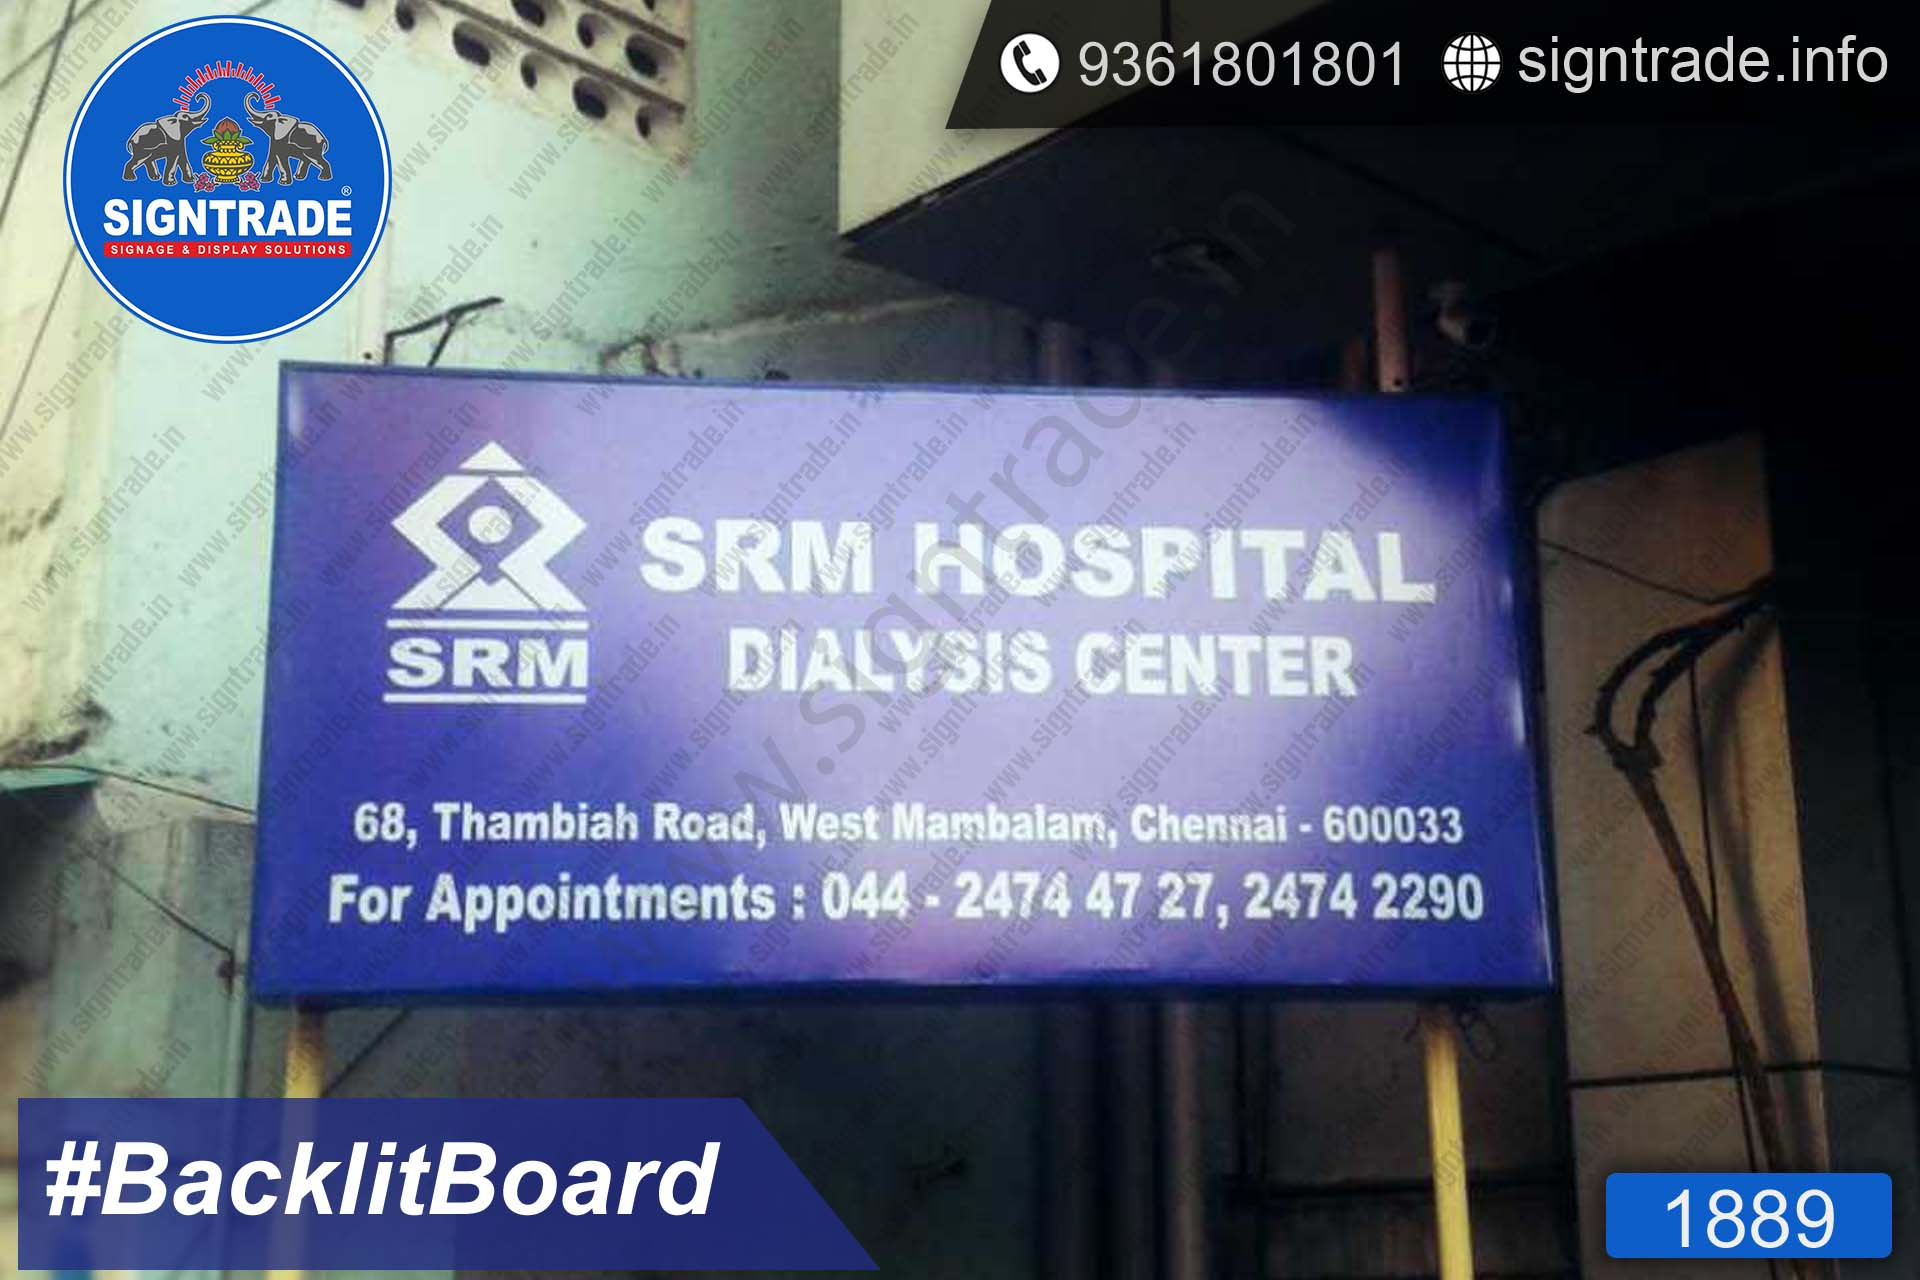 SRM Hospital Dialysis Center Backlit Board